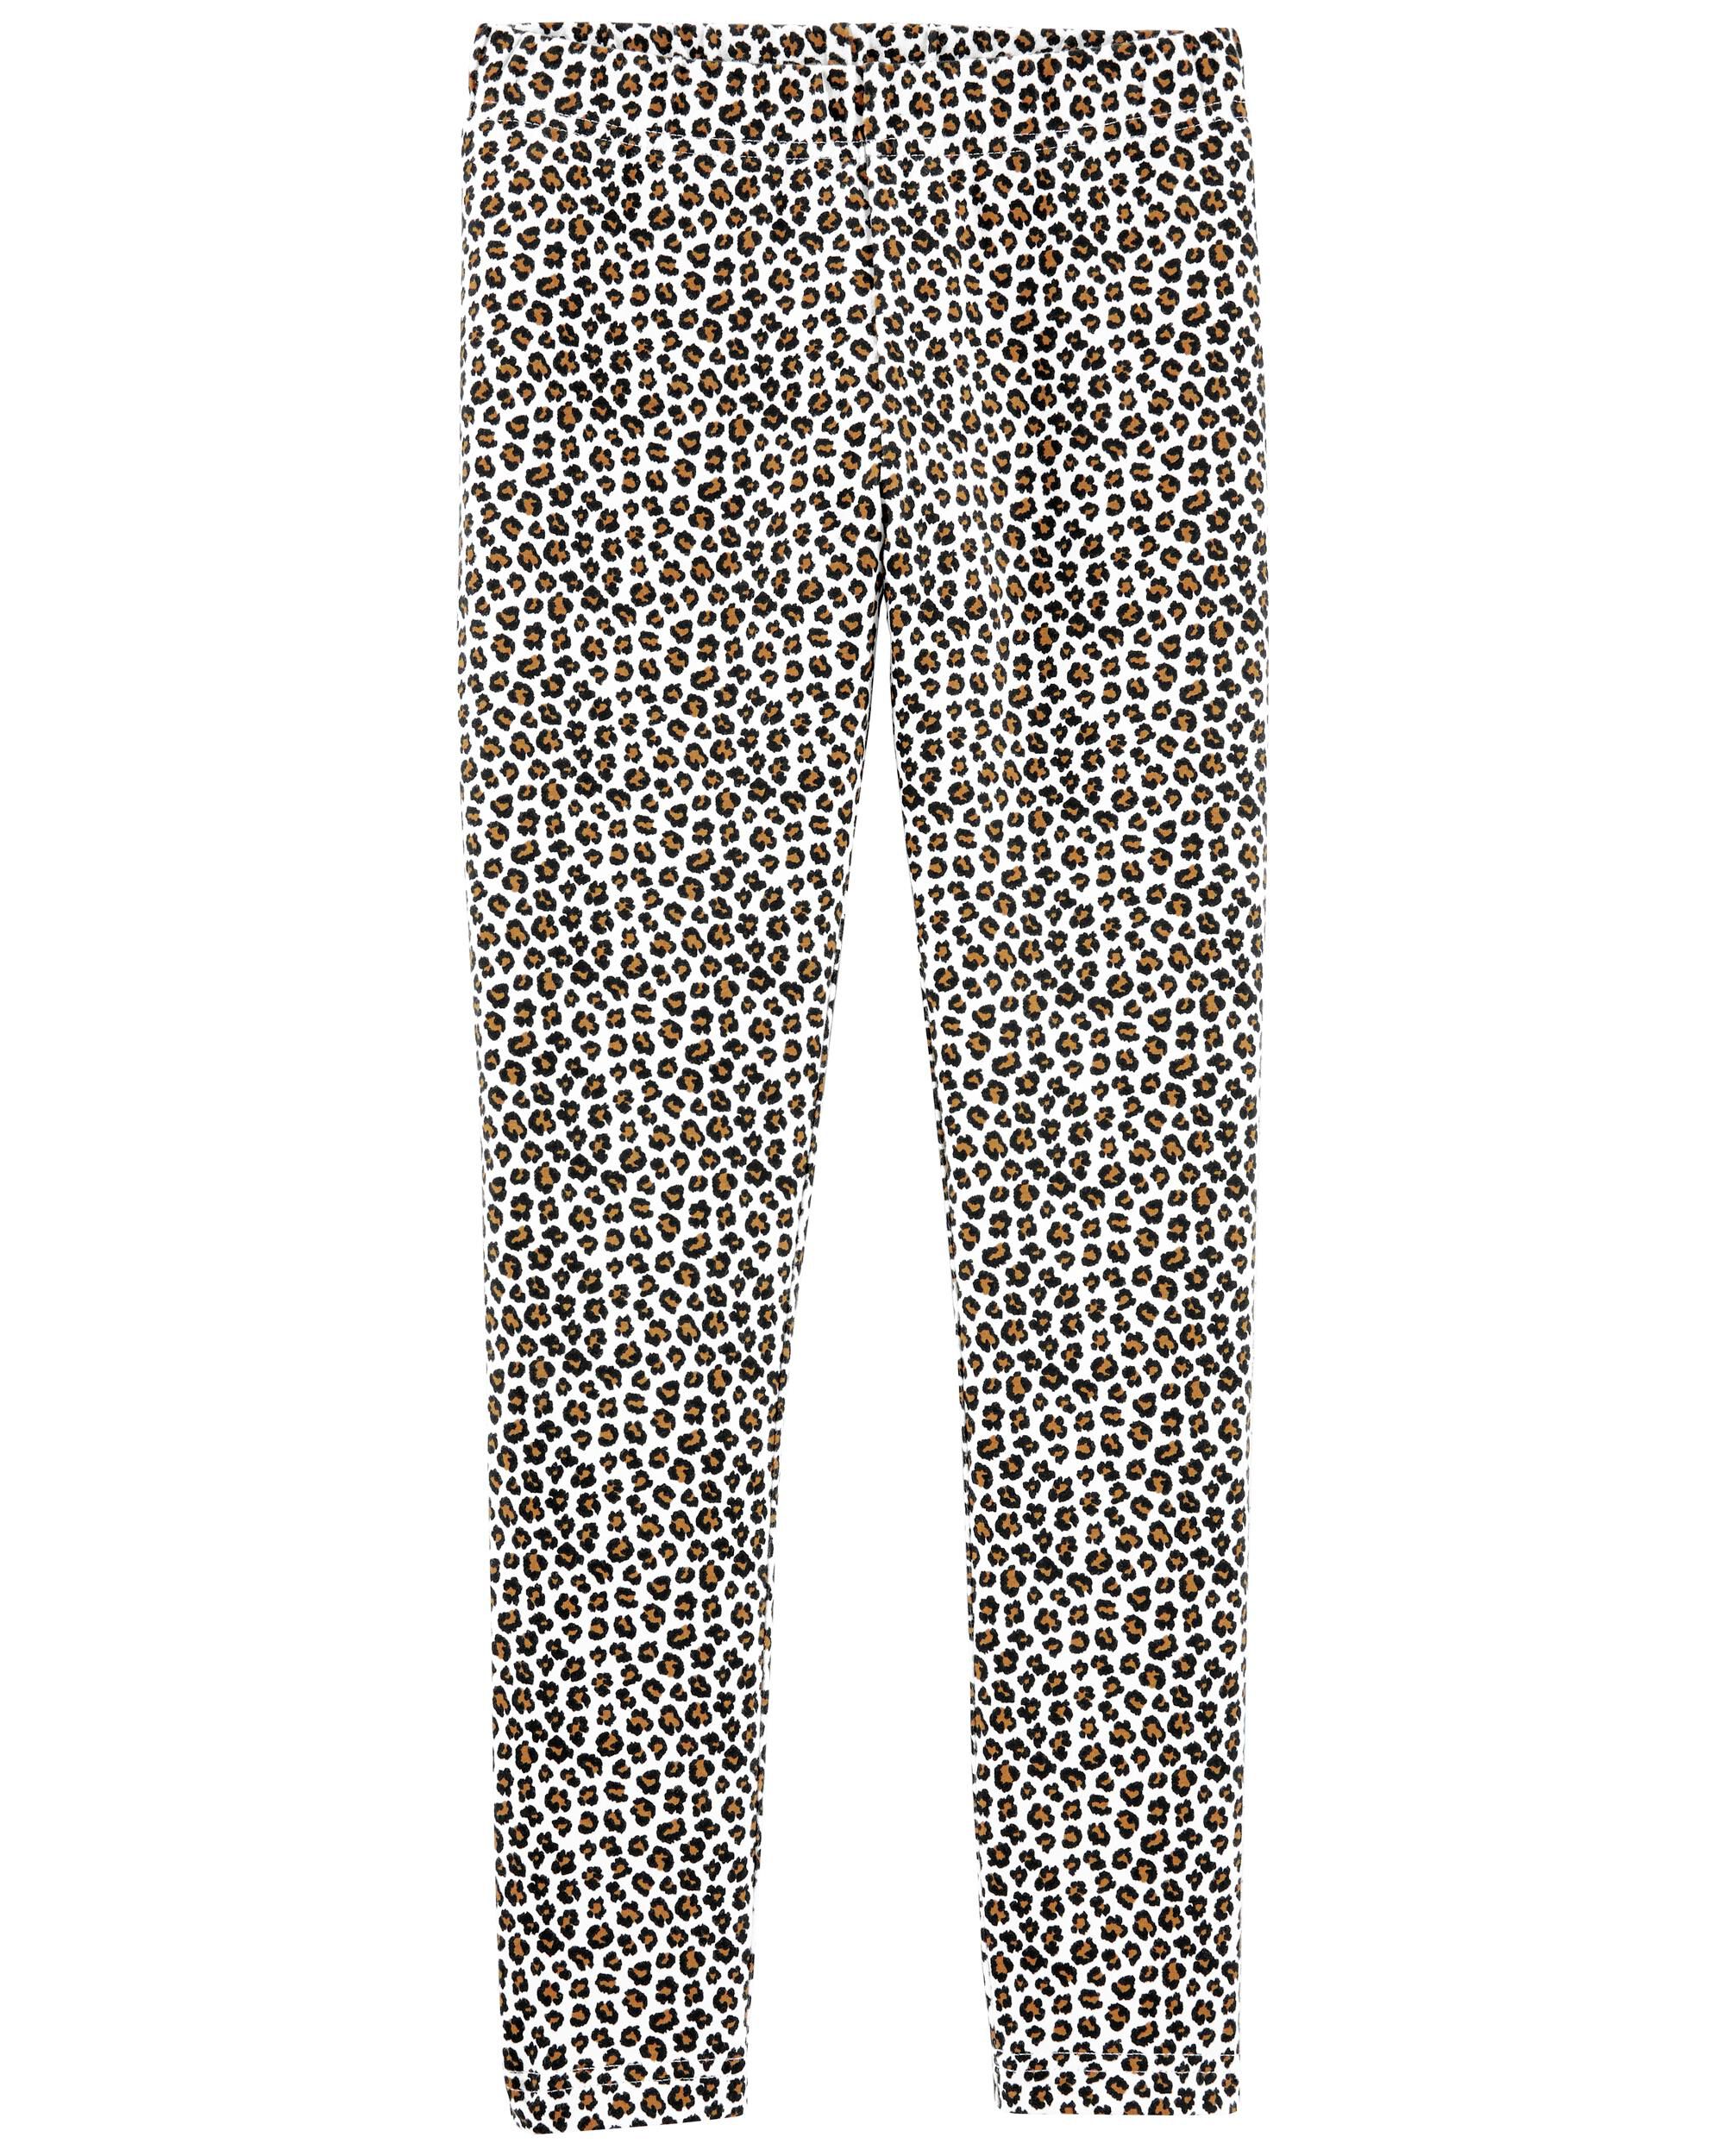 Leopard Work Pants – BIG BUD PRESS